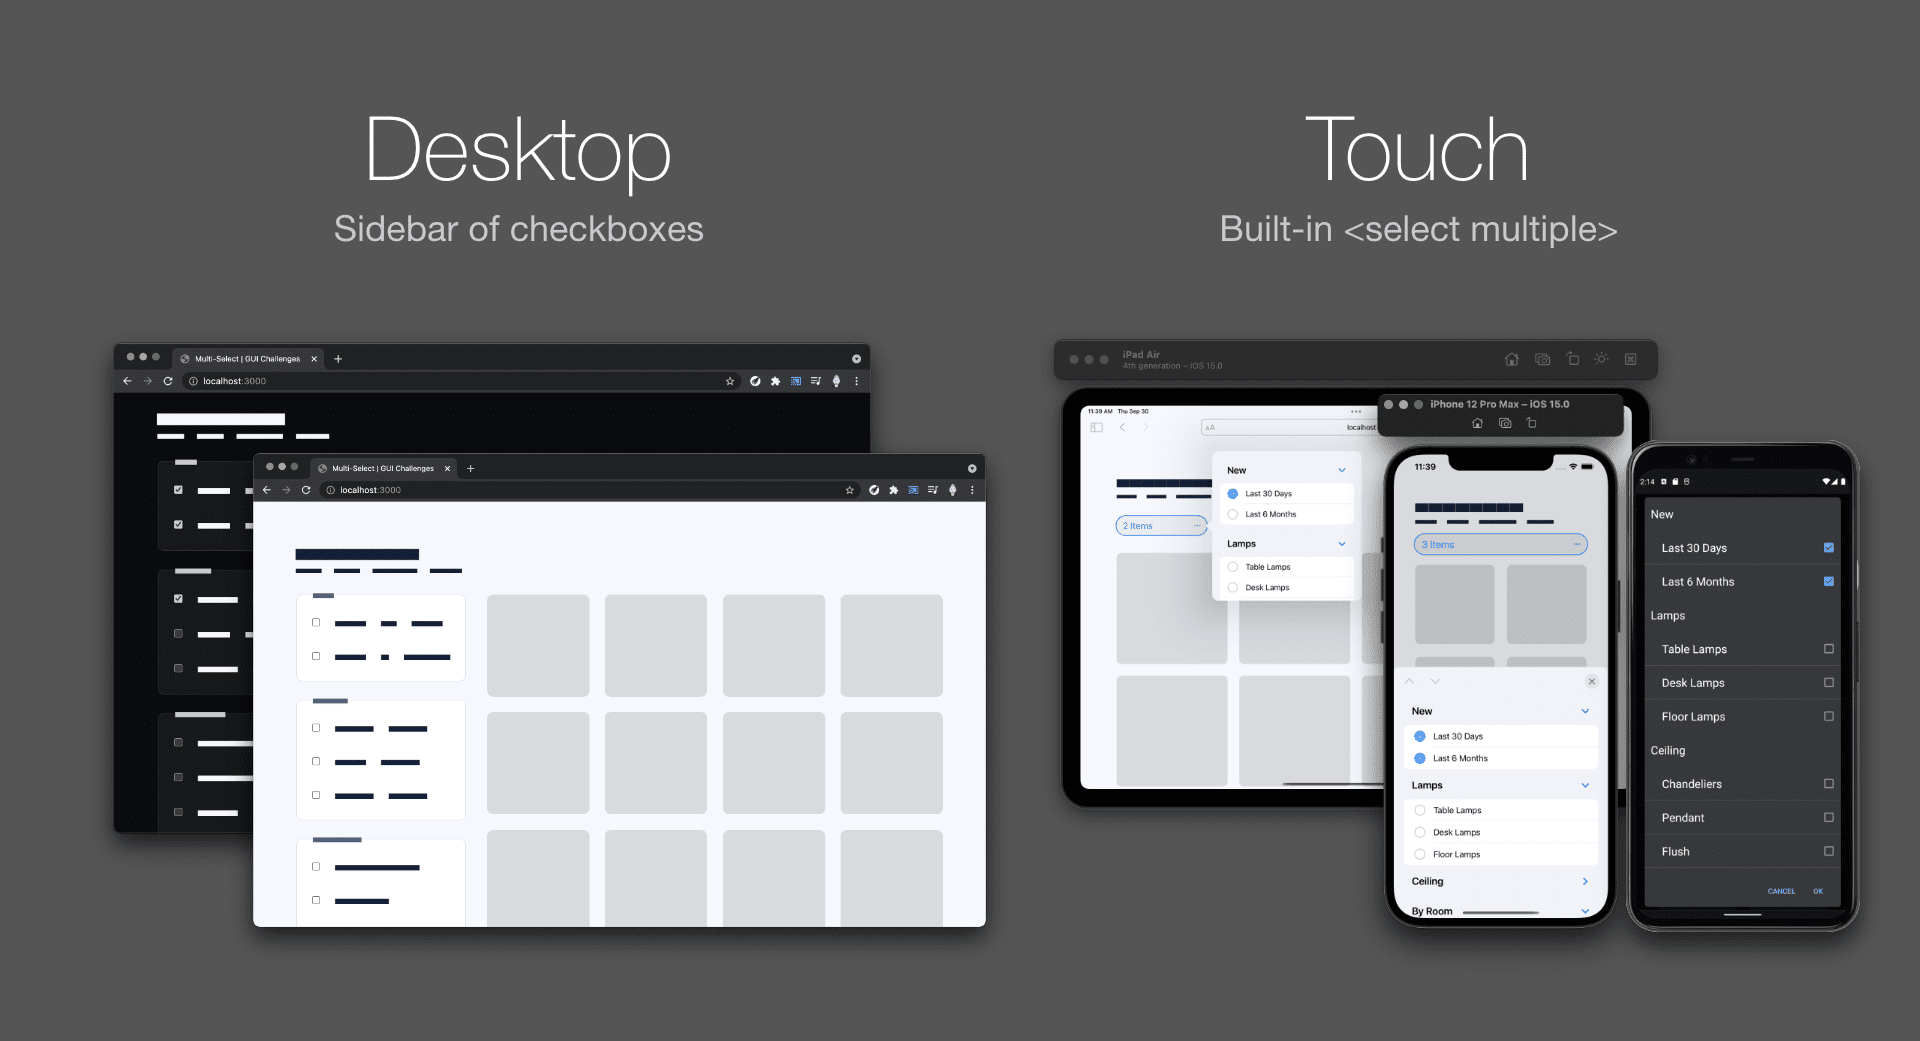 तुलना करने वाला स्क्रीनशॉट, जिसमें चेकबॉक्स के साथ डेस्कटॉप को हल्के और गहरे रंग में
दिख रहा है. वहीं, मोबाइल iOS और Android के साइडबार में कई विकल्प हैं.